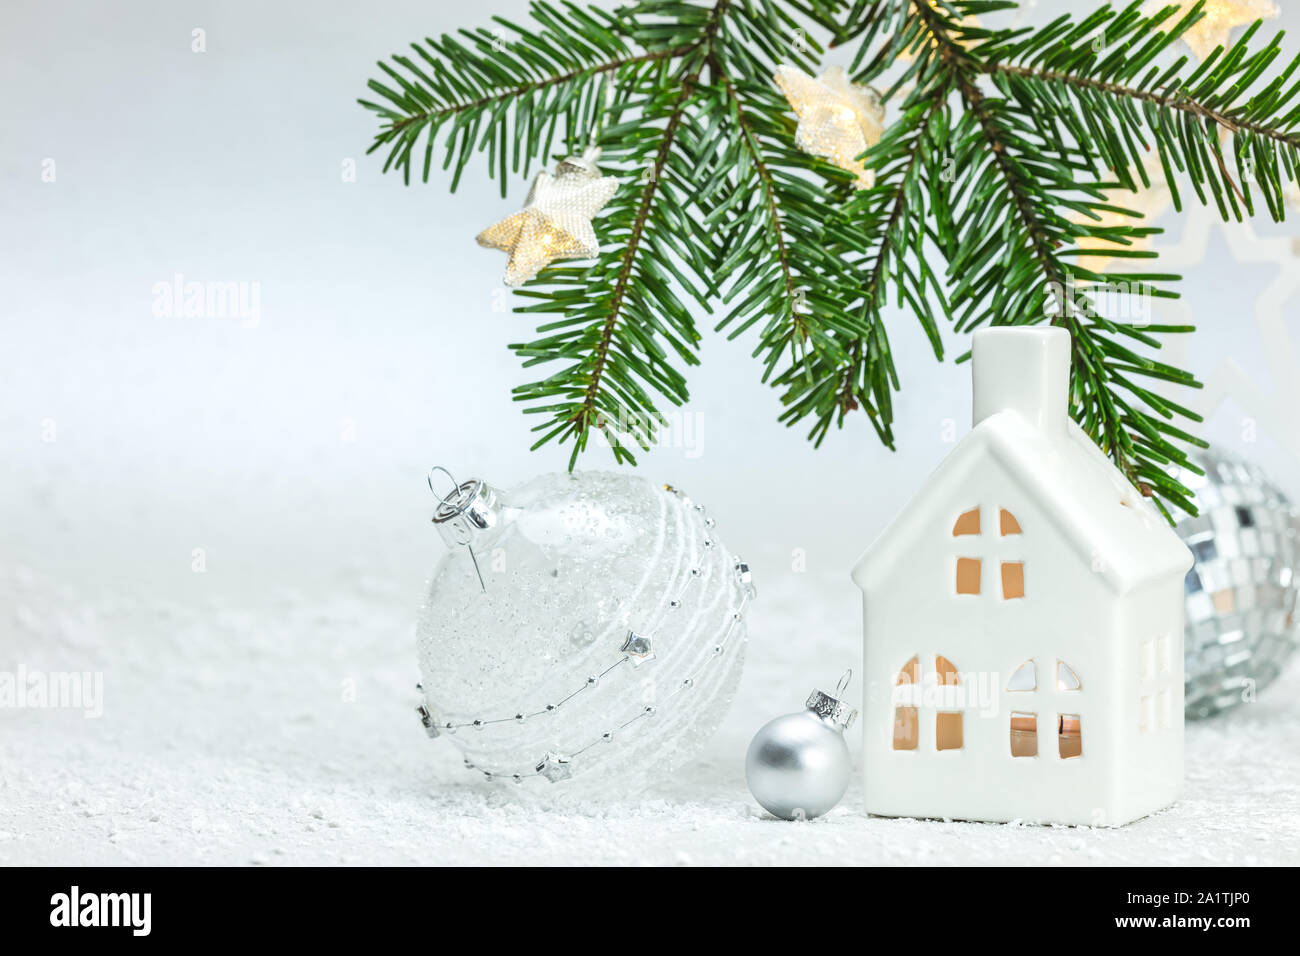 Frohe Weihnachten Zusammensetzung mit grünen Fir Tree Branch, Stern leuchten, Spielzeug, Haus und Bälle gegen weisse Schneelandschaft Hintergrund Stockfoto